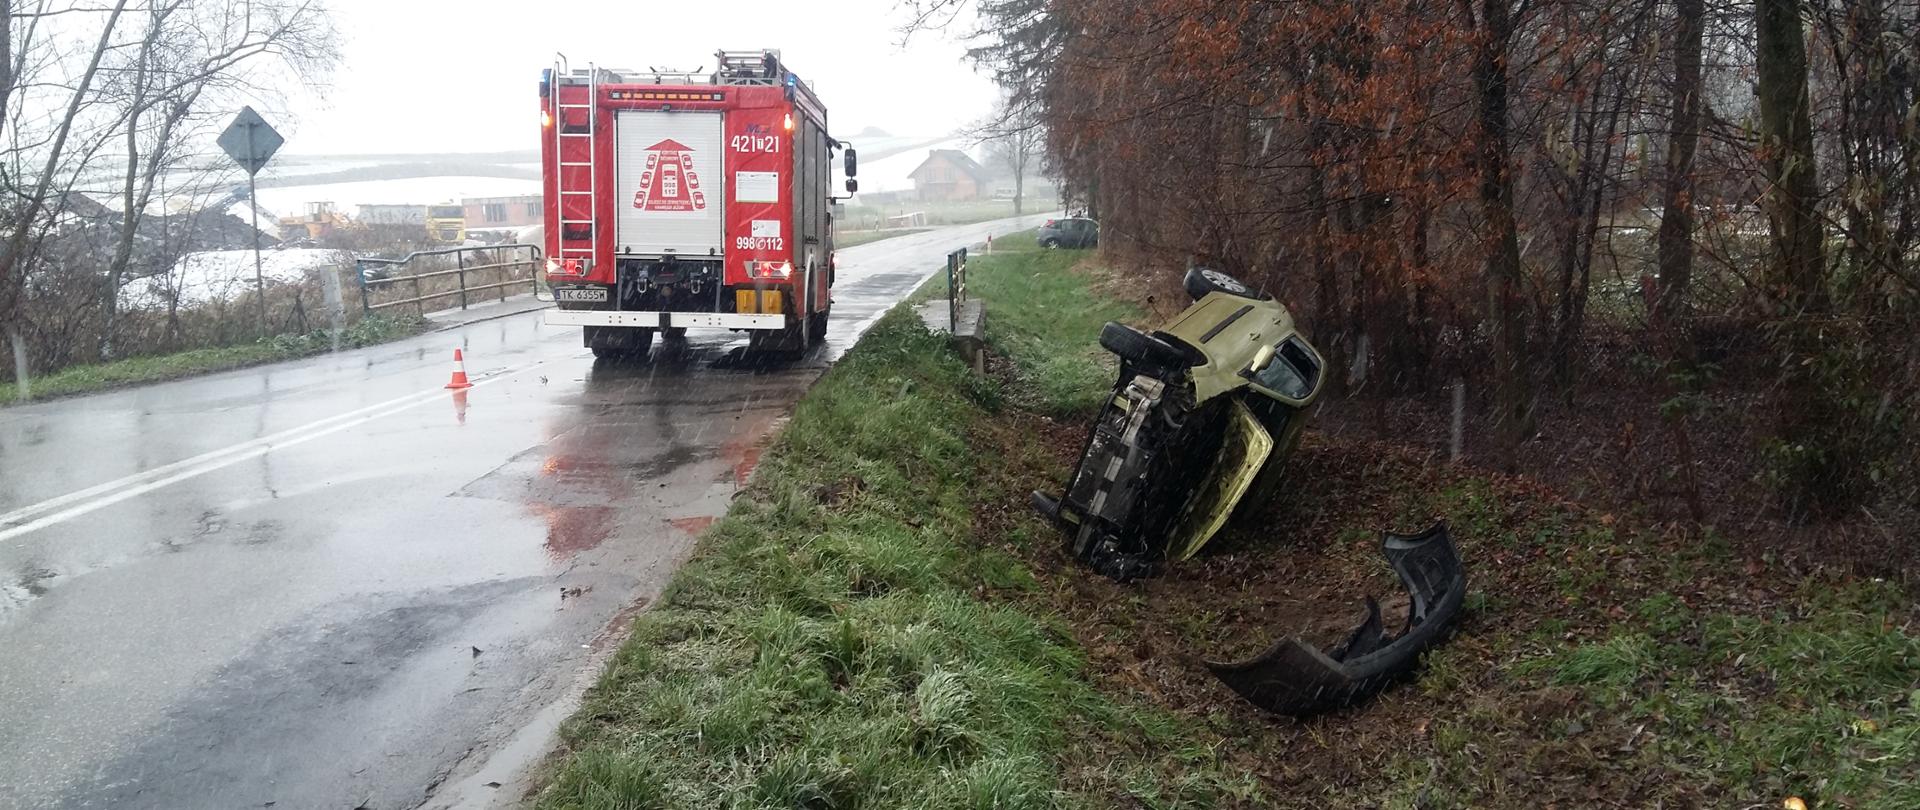 Wypadek drogowy w miejscowości Prokocice.